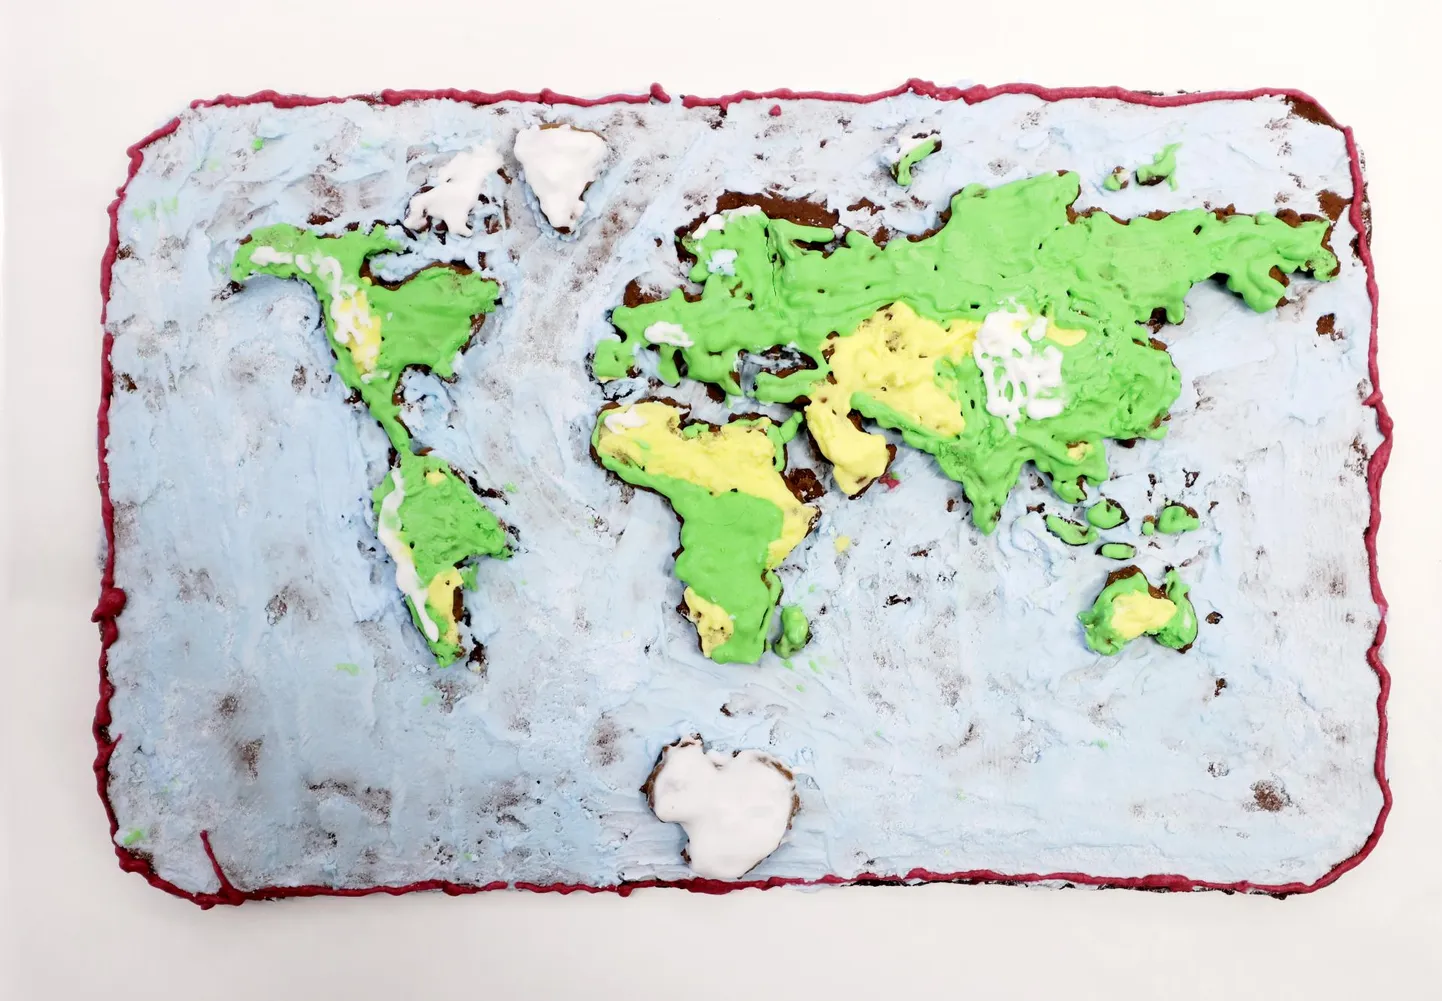 Üheteistkümneaastane Raimond Veenpere valmistas piparkoogitainast maailmakaardi. Kogu töö tegi ta otsast lõpuni üksi.